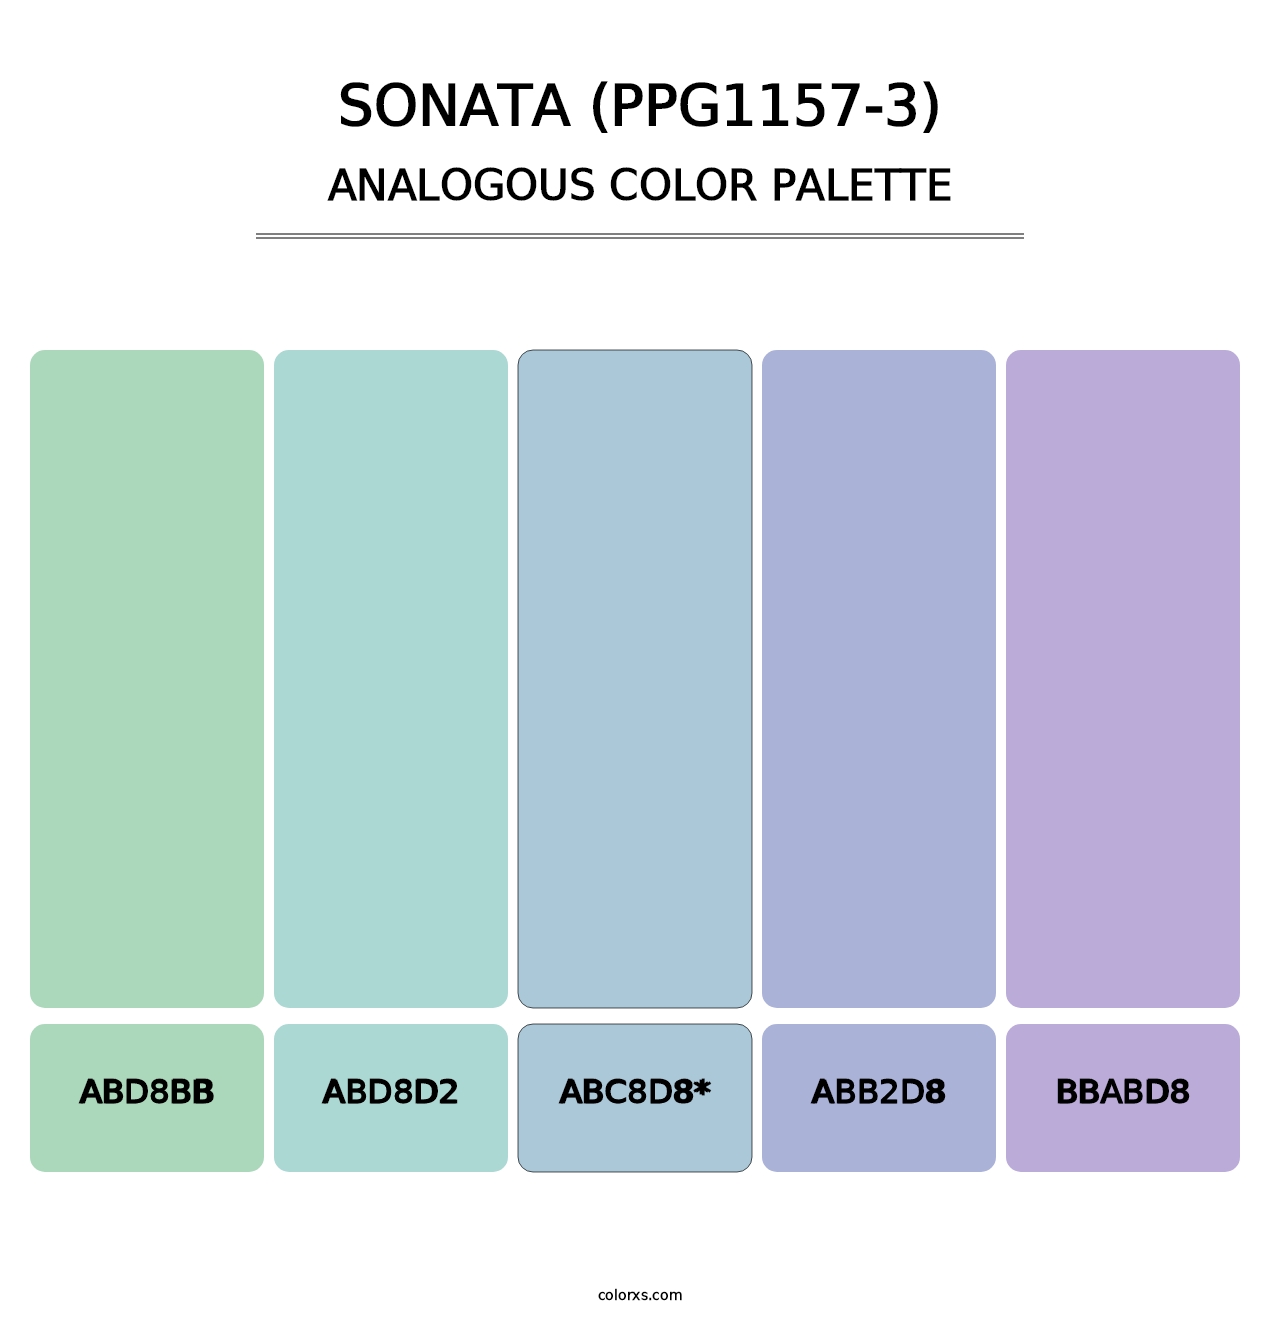 Sonata (PPG1157-3) - Analogous Color Palette